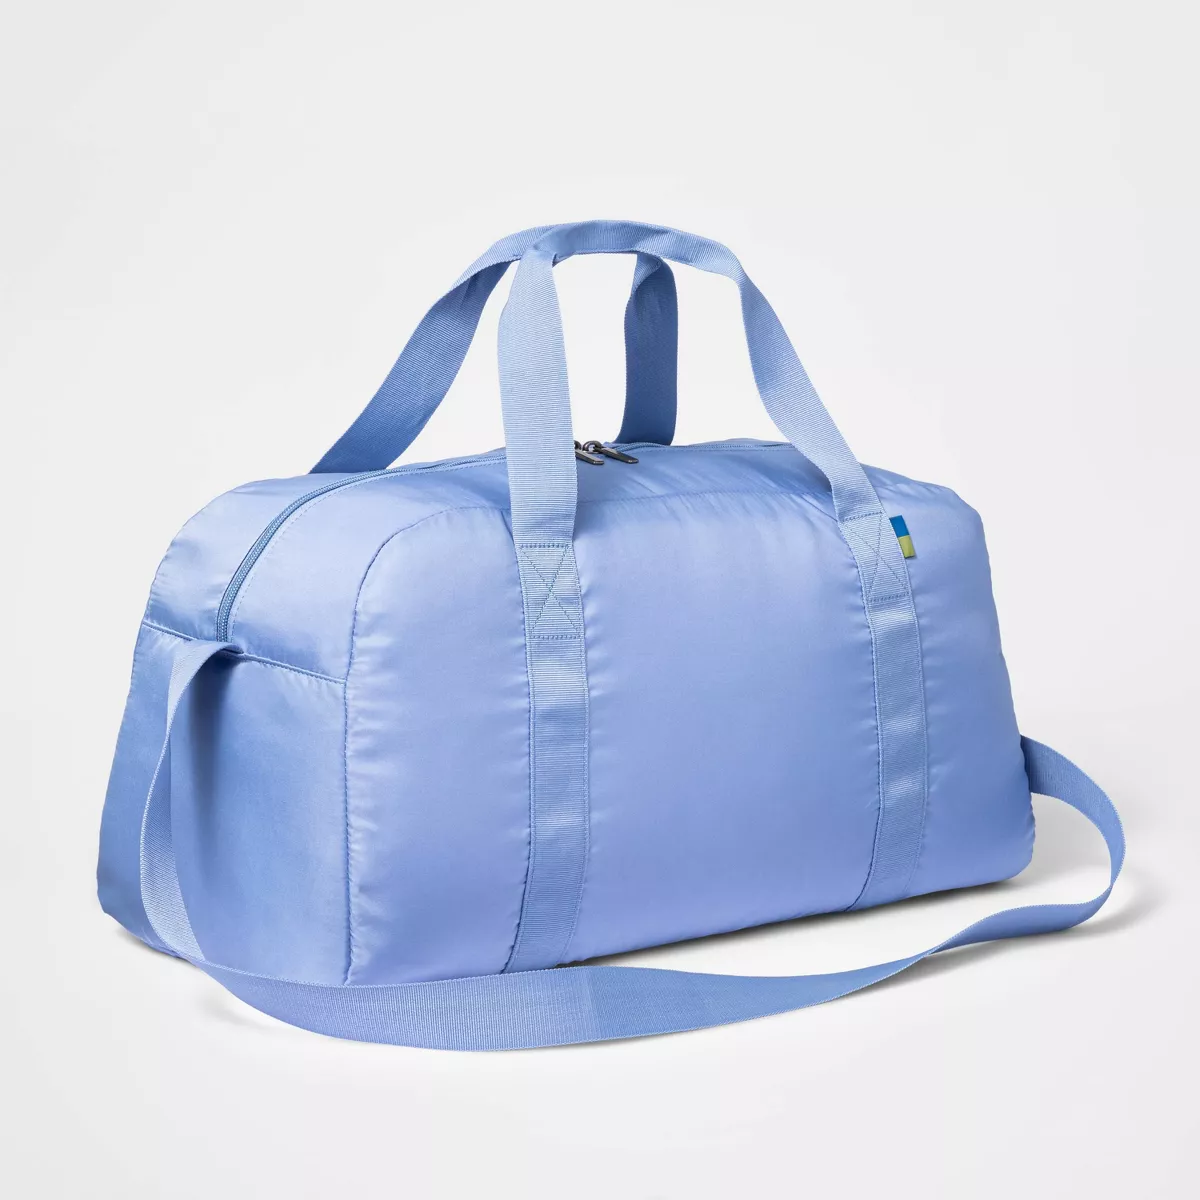 Target 30L Packable Duffel Bag